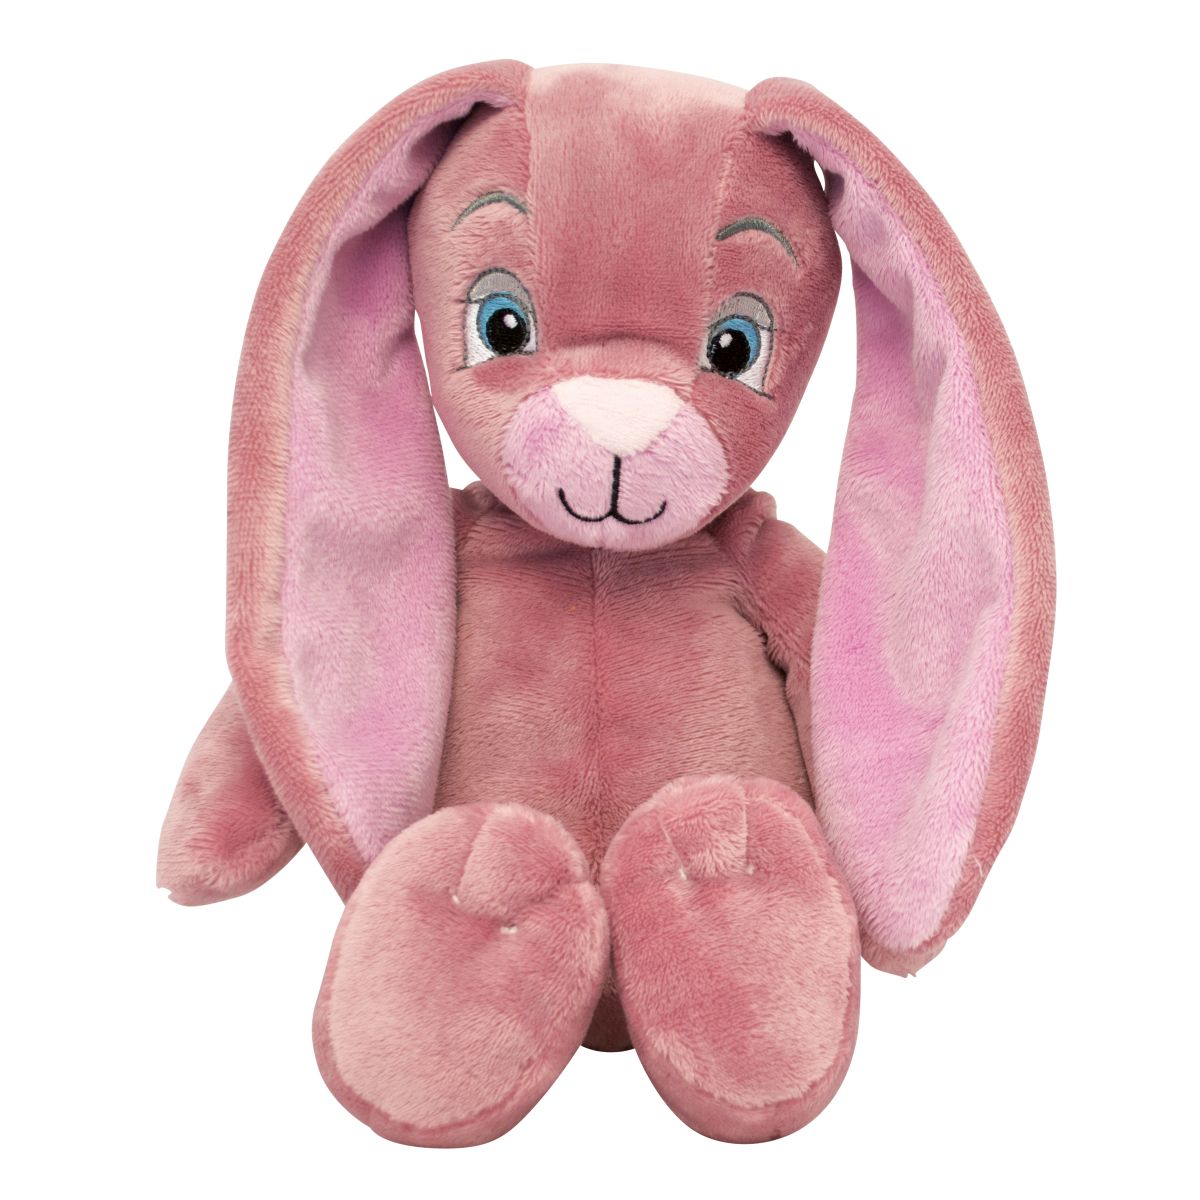 My Teddy - Bunny Pink (20 cm) (28-280033) - Leker